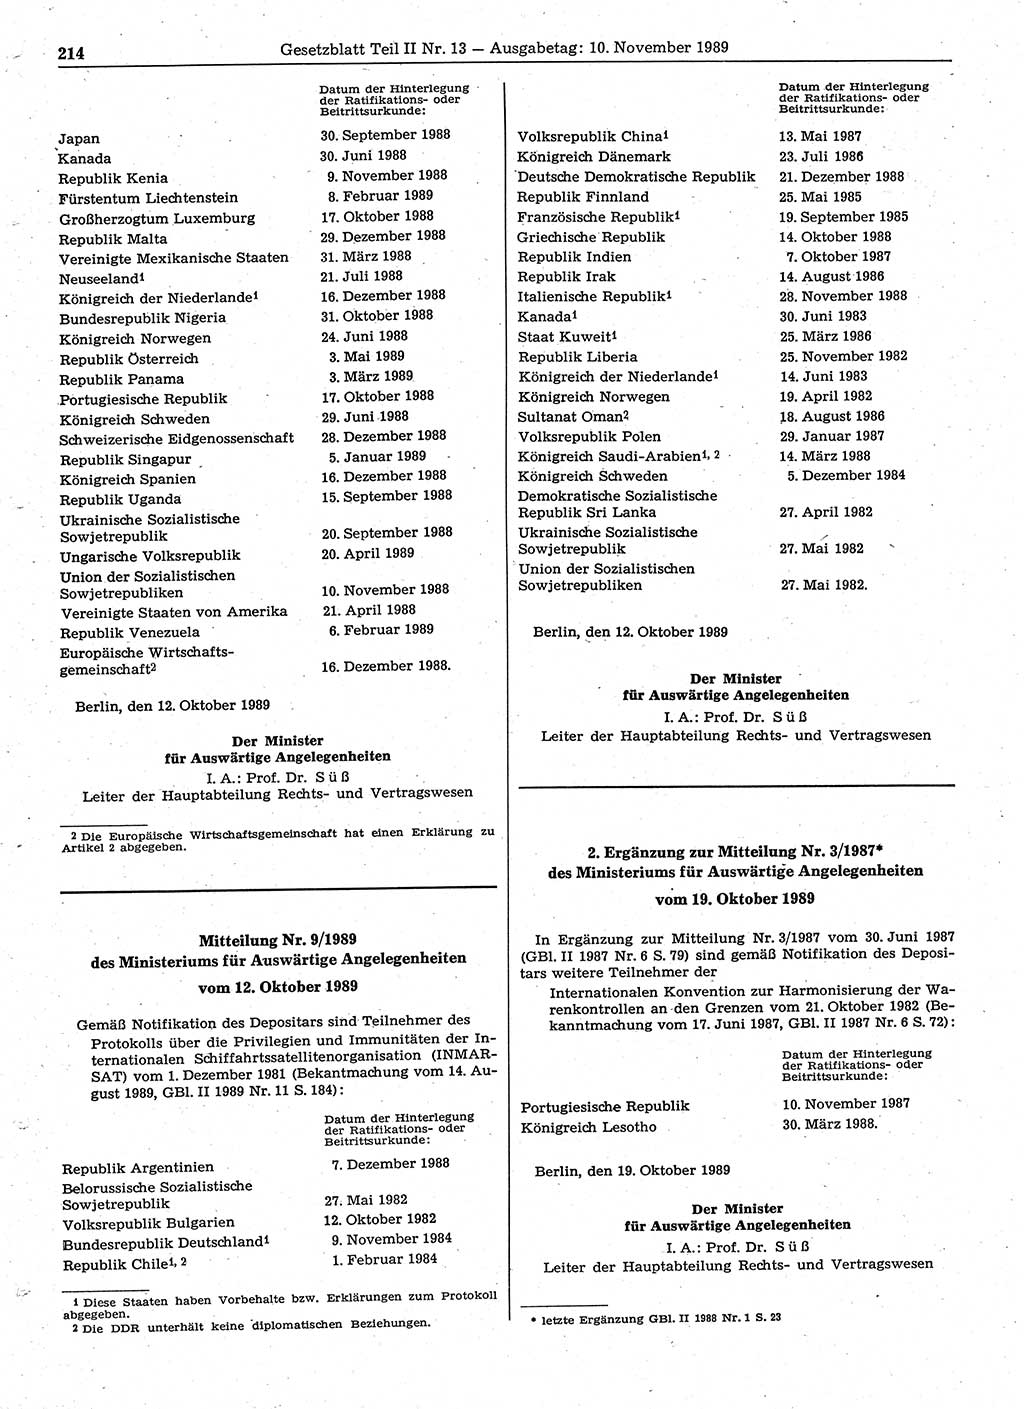 Gesetzblatt (GBl.) der Deutschen Demokratischen Republik (DDR) Teil ⅠⅠ 1989, Seite 214 (GBl. DDR ⅠⅠ 1989, S. 214)